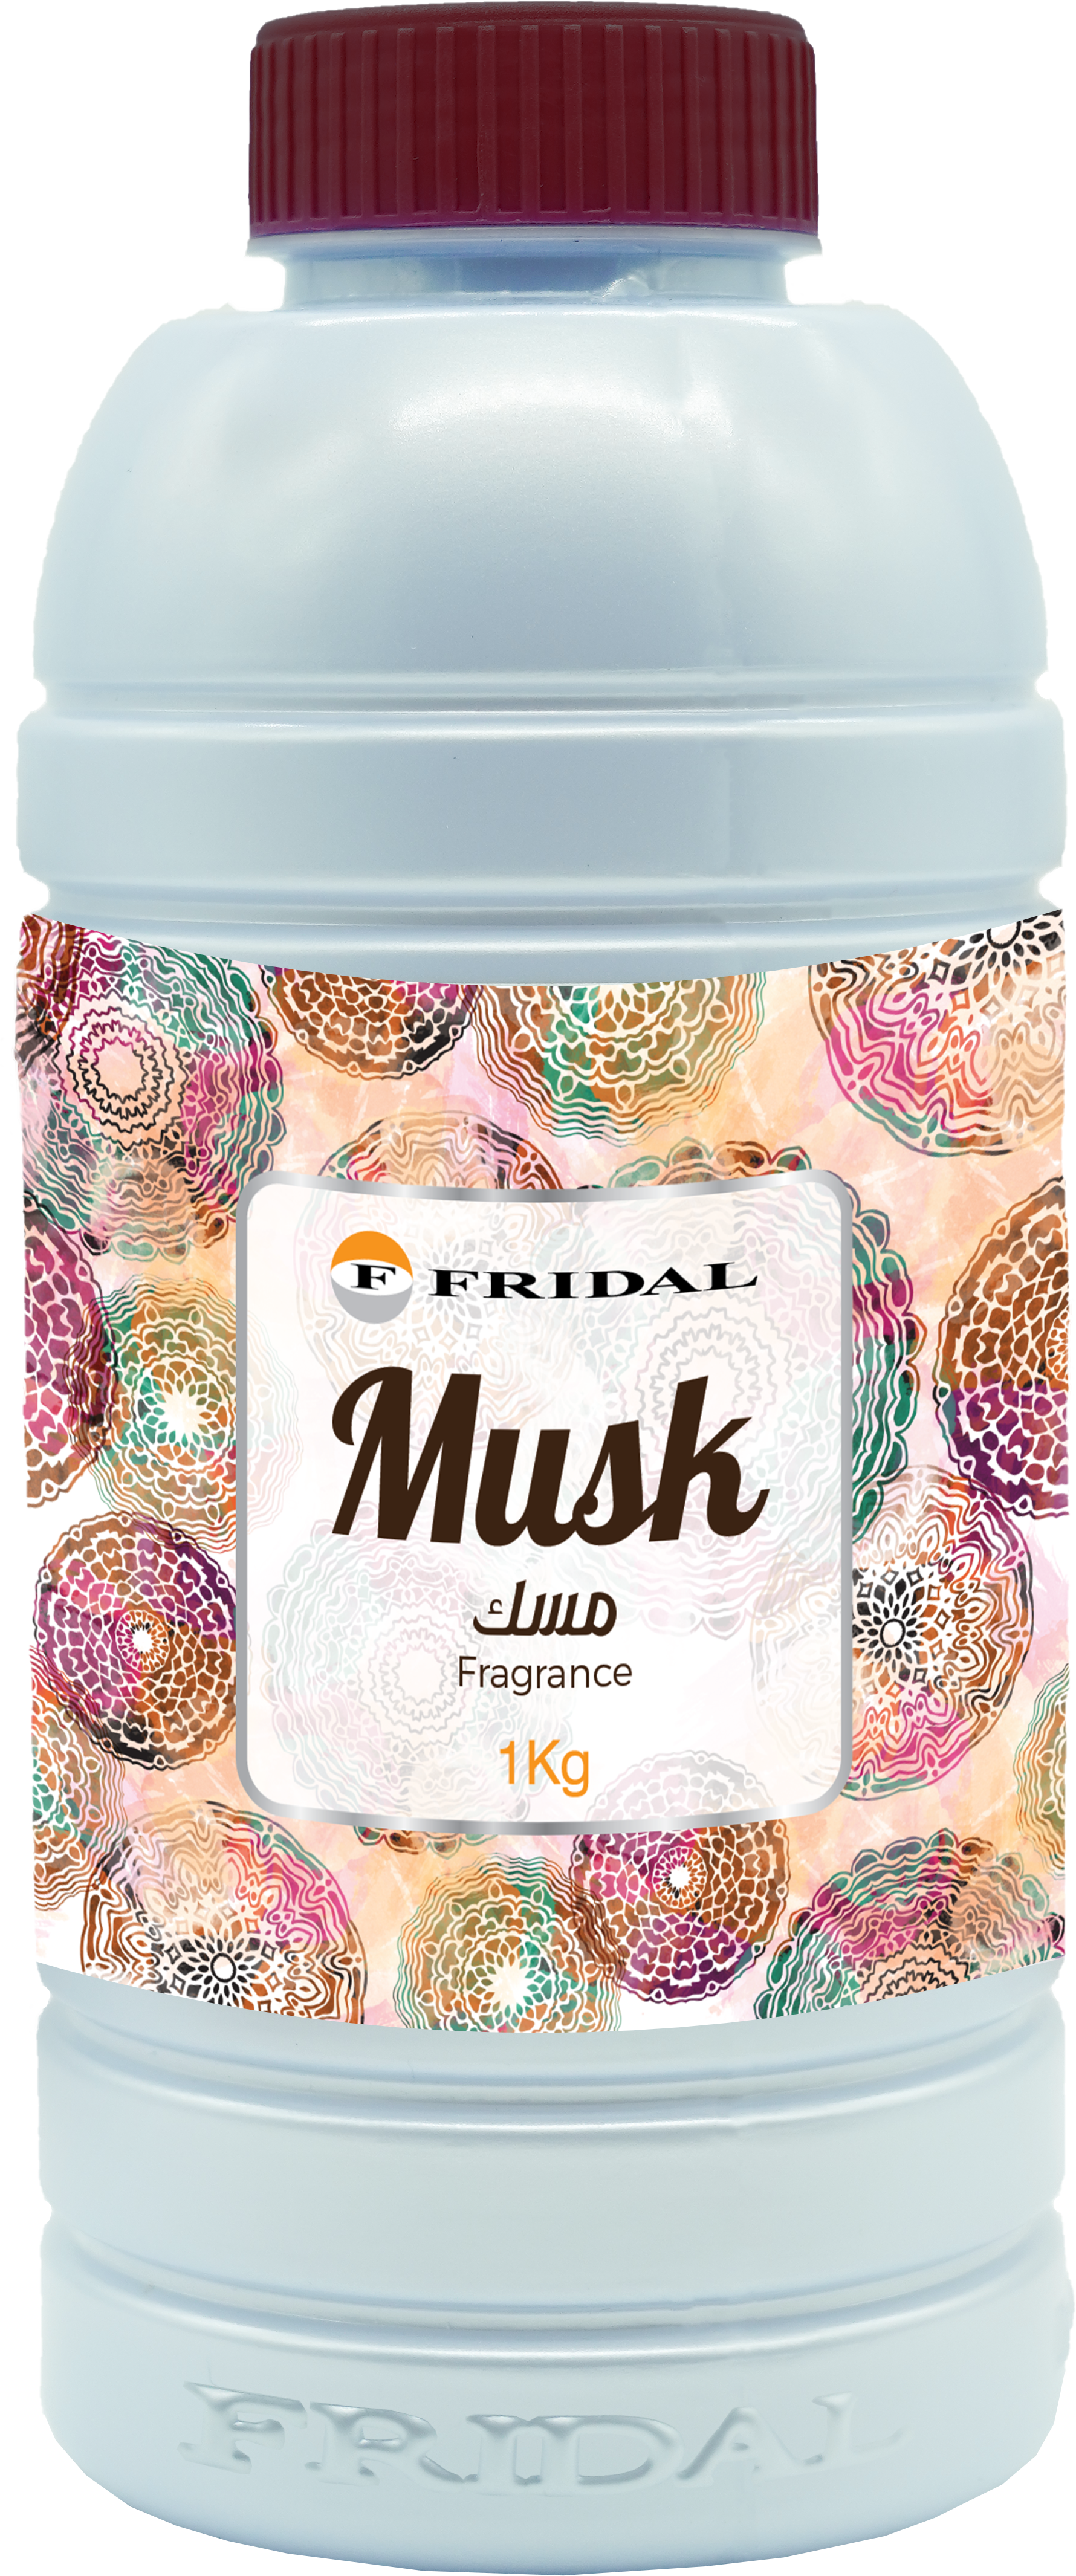 Multi-purpose usage freshener "Musk 1Kg"